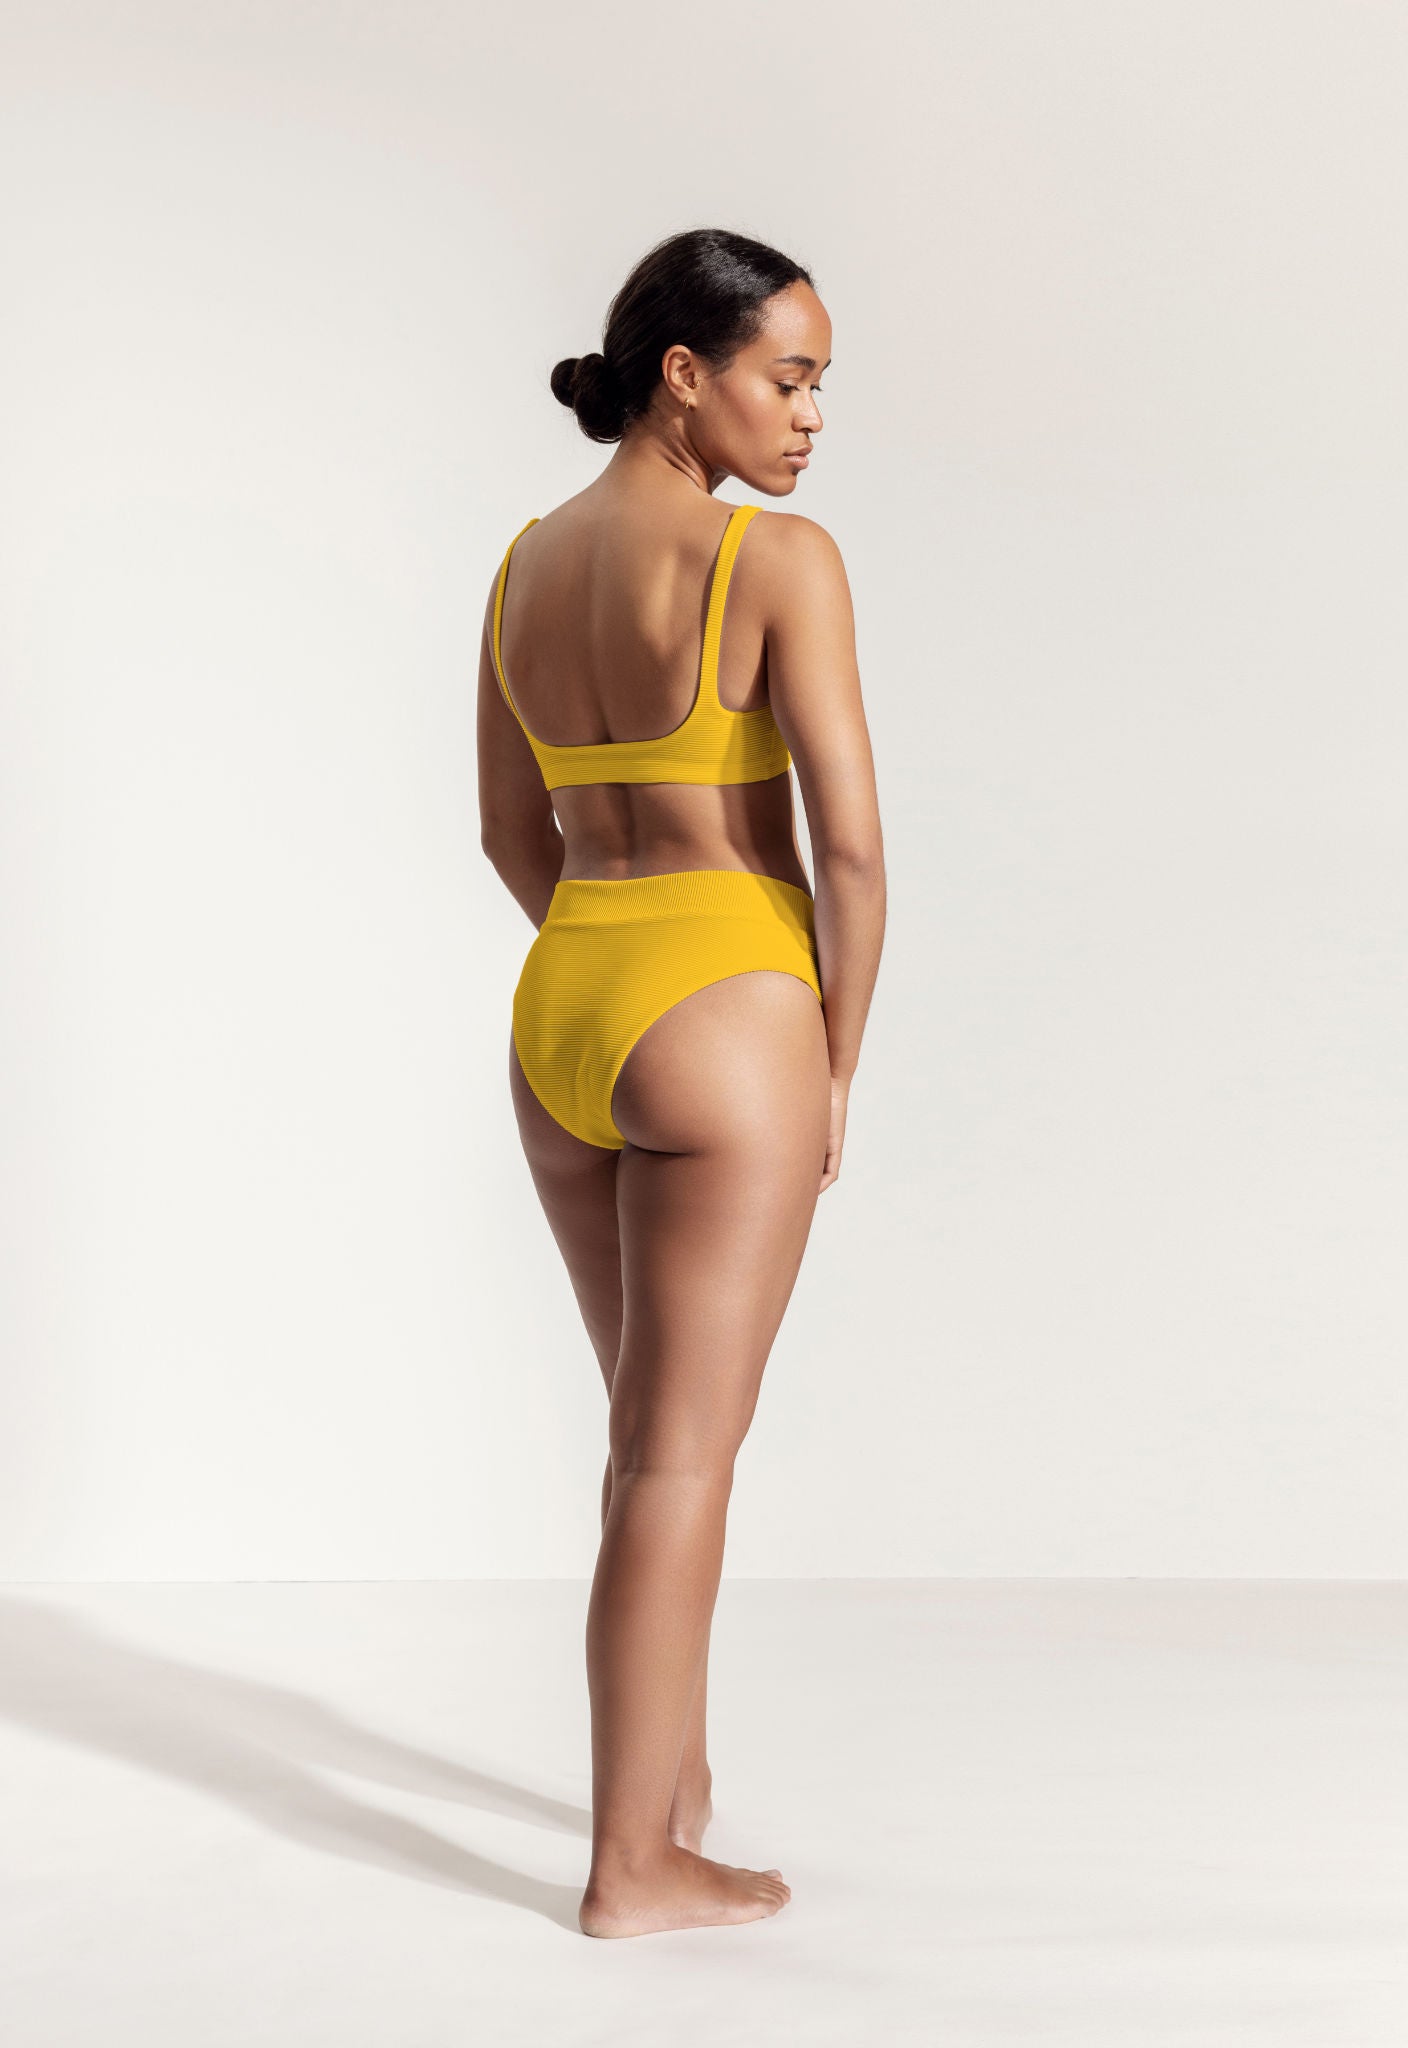 Bikini Top “Vento” in sun yellow rib